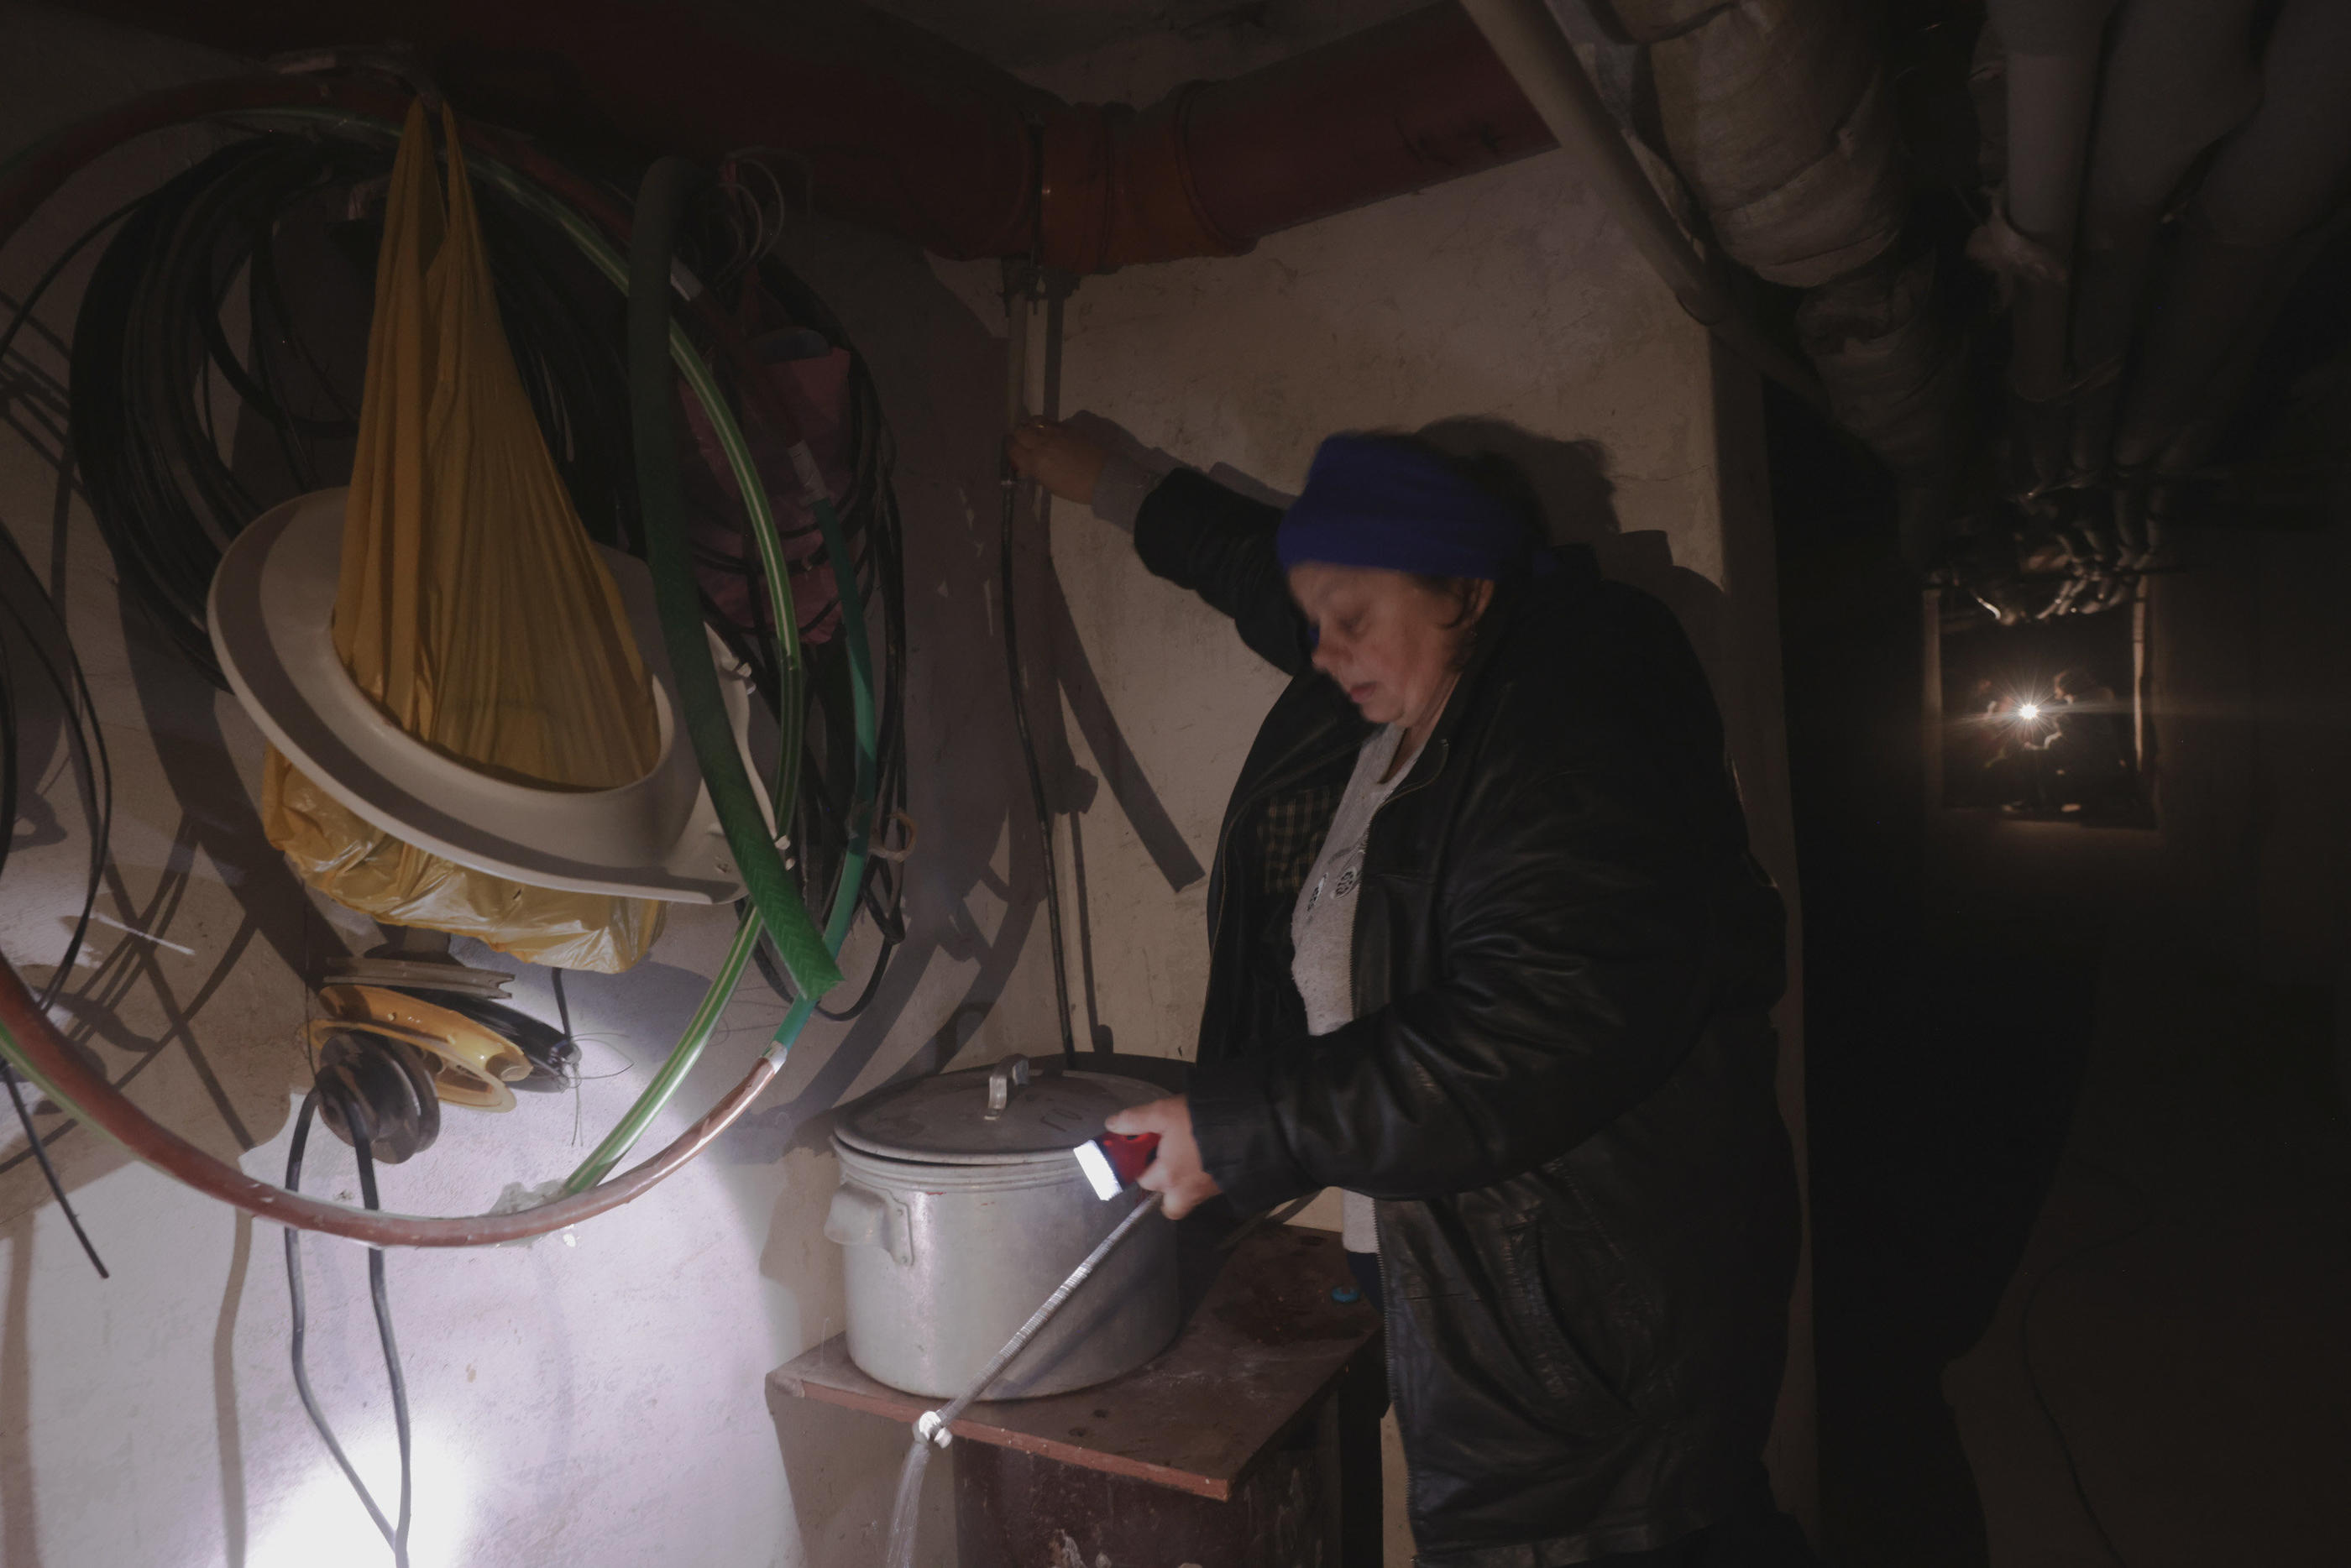 Bakhmout (Ukraine), samedi 17 décembre. Ludmila, 65 ans, vit depuis sept mois avec son mari au sous-sol d’un jardin d’enfants reconverti en abri. Une gouttière permet de récupérer l’eau de pluie pour la cuisine ou la toilette. LP/Philippe de Poulpiquet